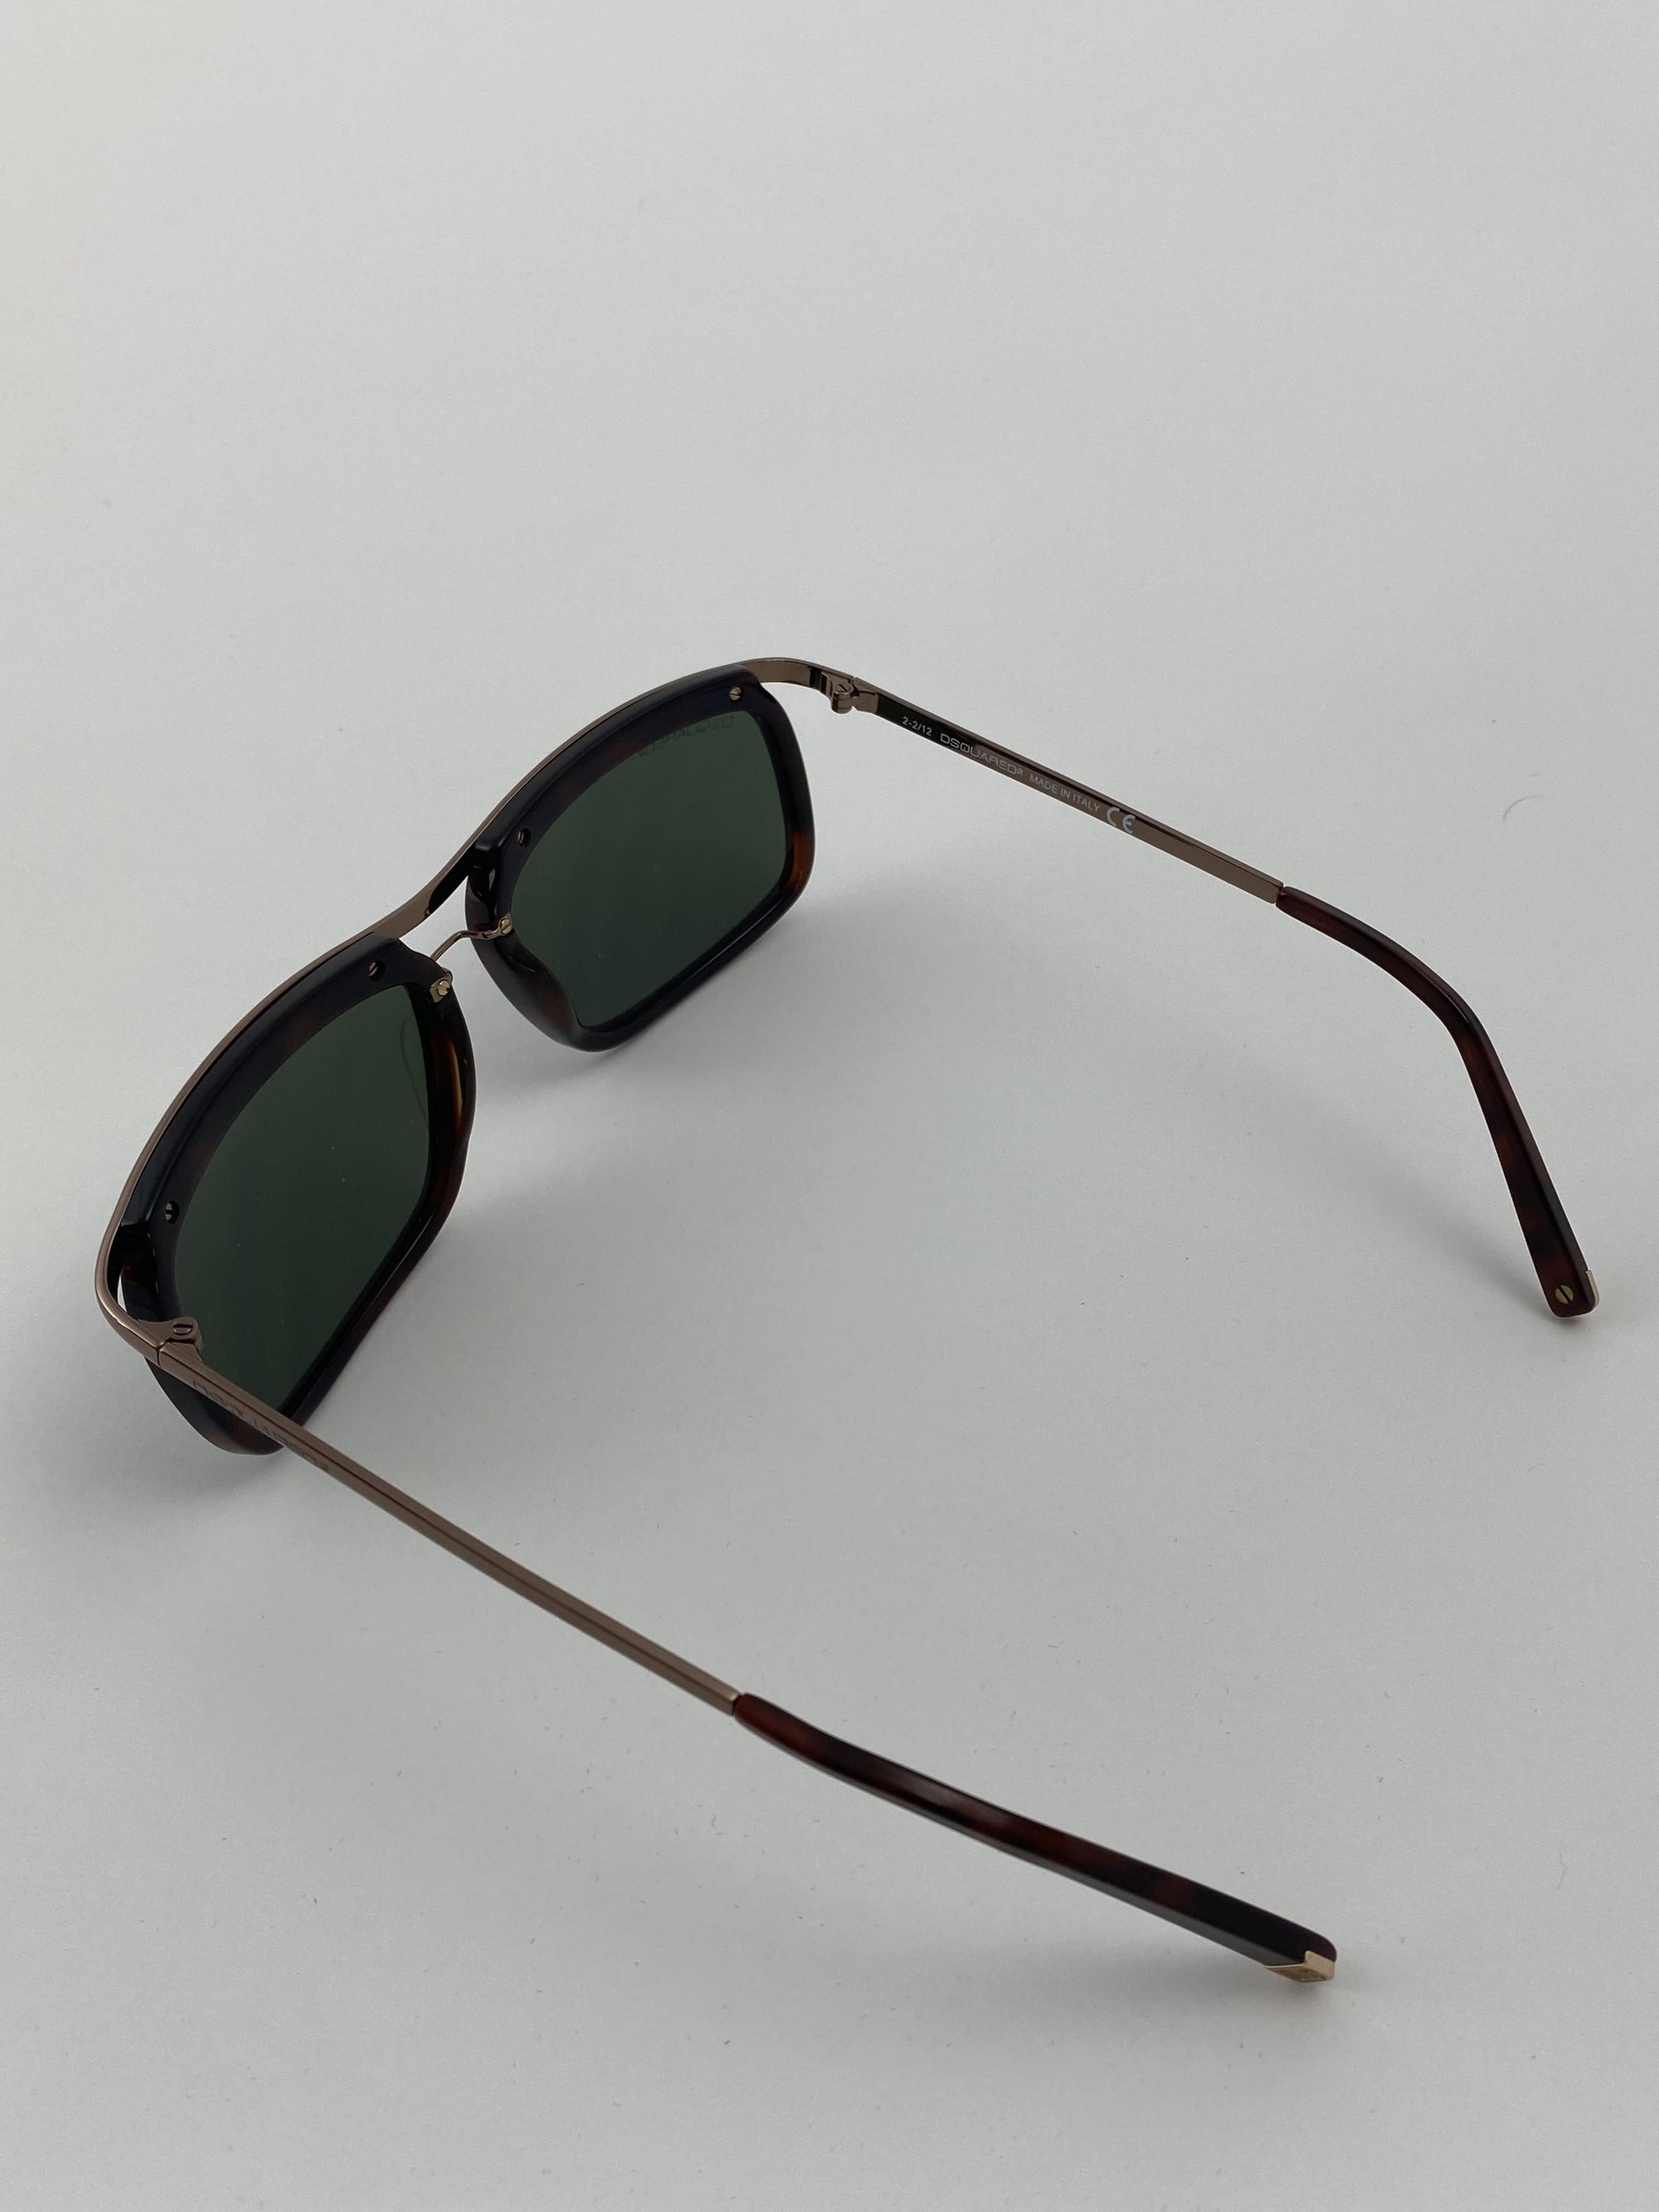 Produktbild einer Dsquared Sunglasses brown von hinten vor weißem Hintergrund.